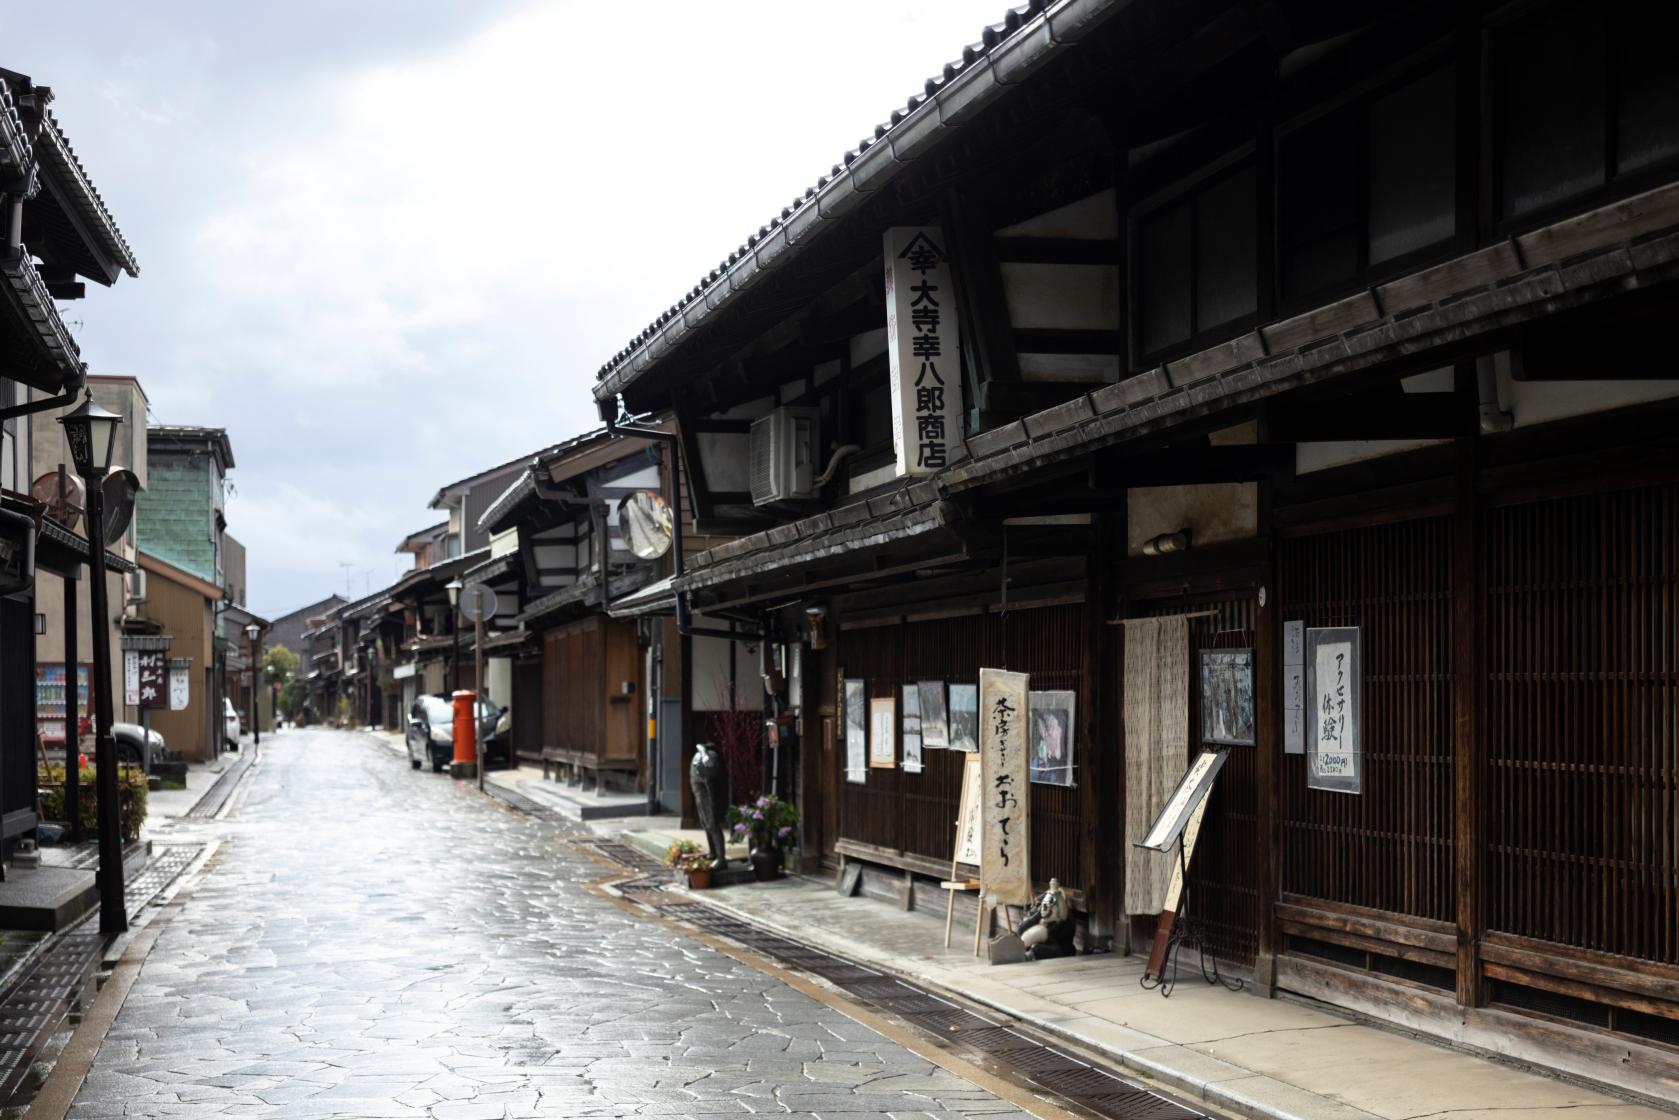 โอเตระ: ร้านค้าและคาเฟ่ที่เต็มไปด้วยประวัติศาสตร์และสวนญี่ปุ่น-0